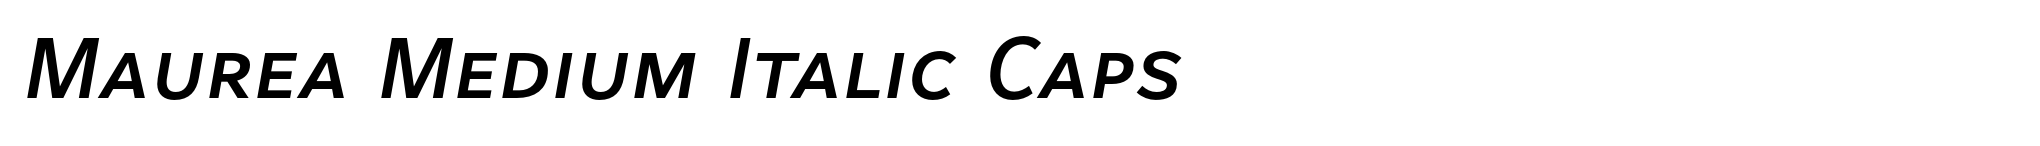 Maurea Medium Italic Caps image